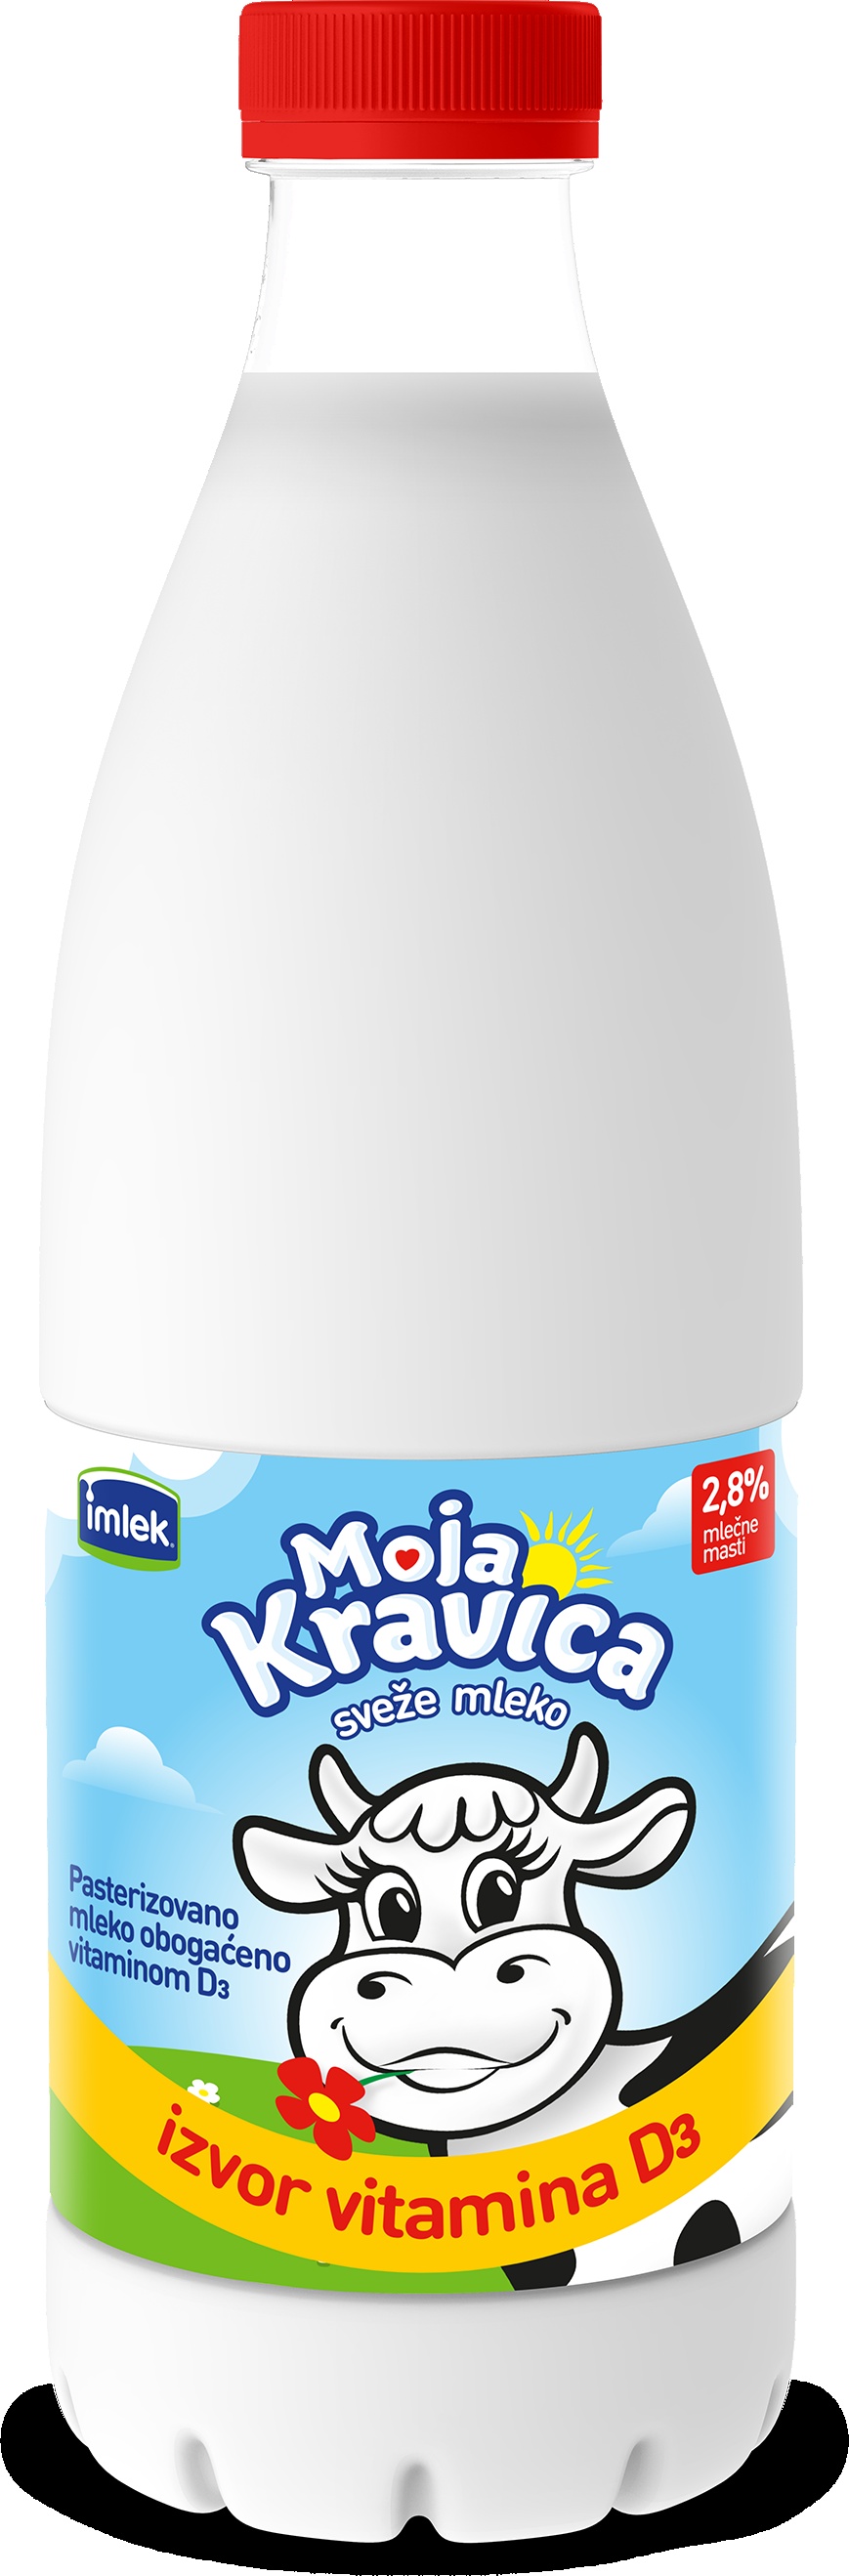 Slika za Sveže mleko 2.8% mm sa D3 vitaminom Moja Kravica 0.968l